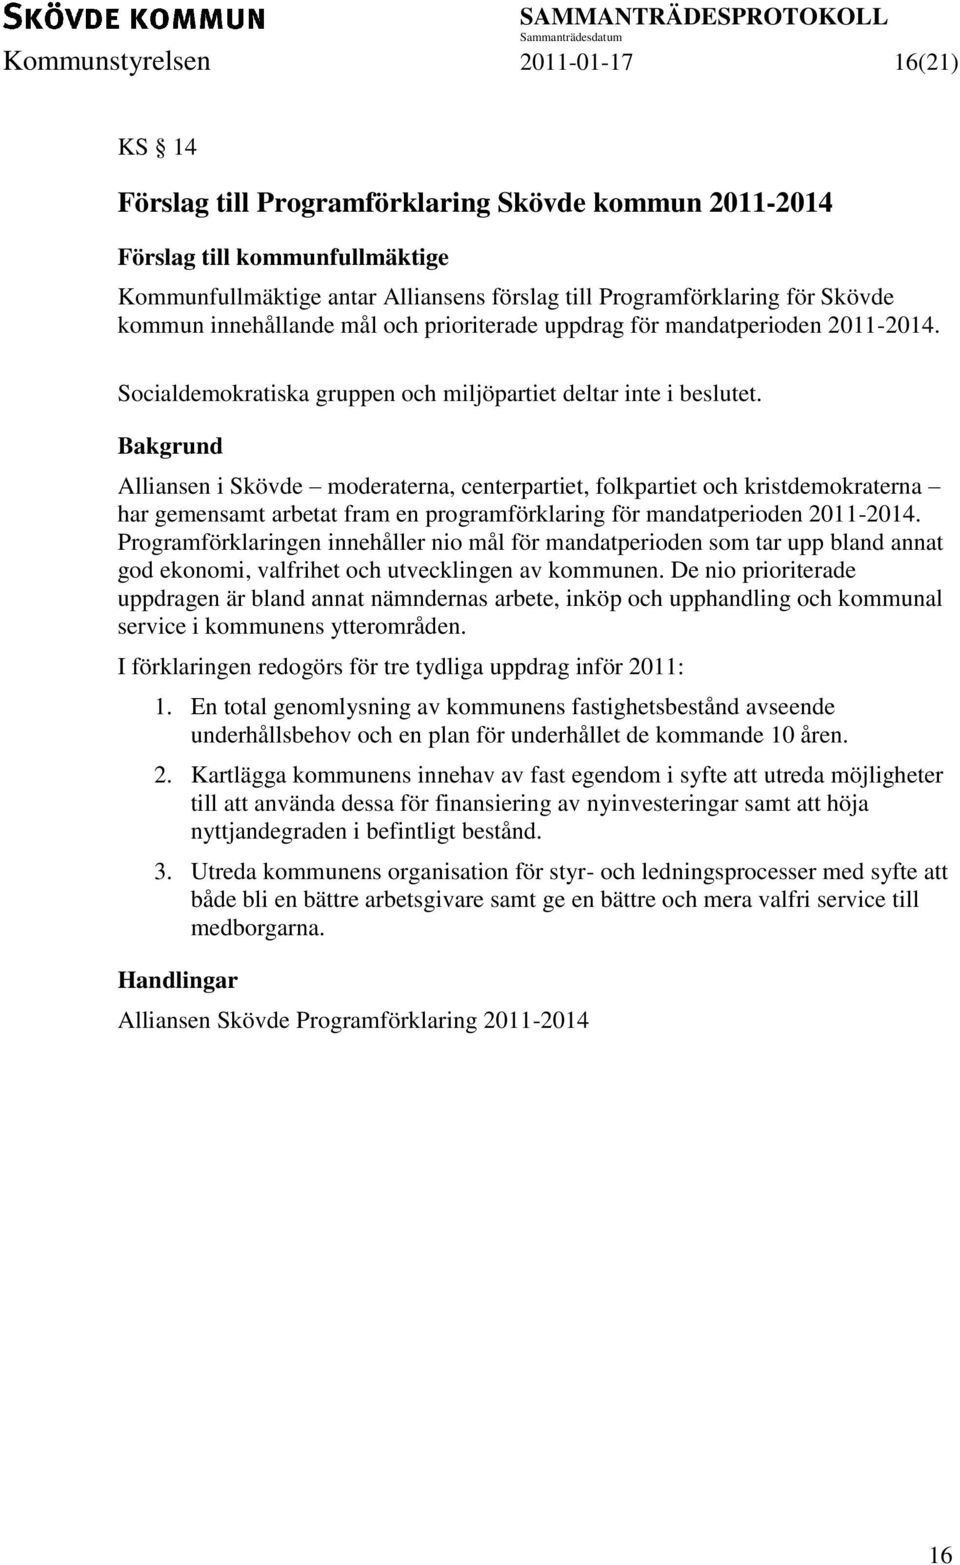 Alliansen i Skövde moderaterna, centerpartiet, folkpartiet och kristdemokraterna har gemensamt arbetat fram en programförklaring för mandatperioden 2011-2014.